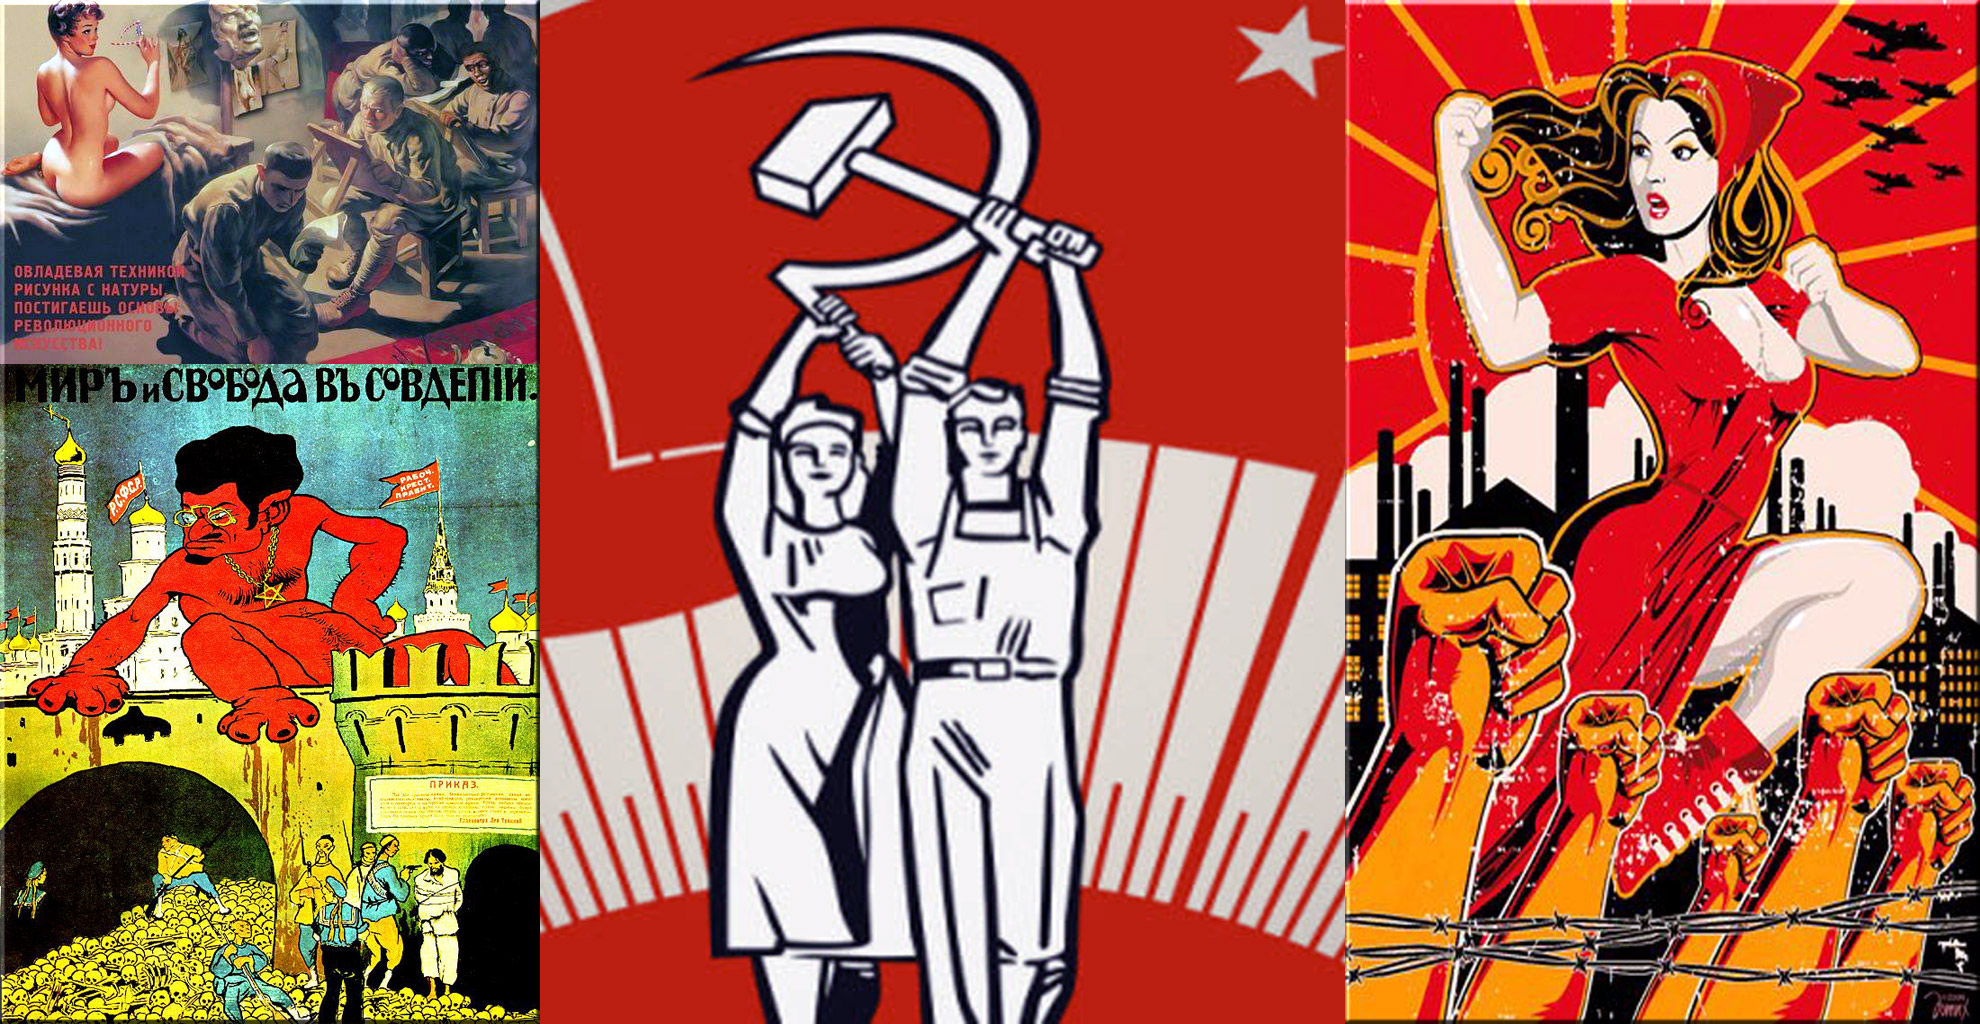 komunizam propaganda